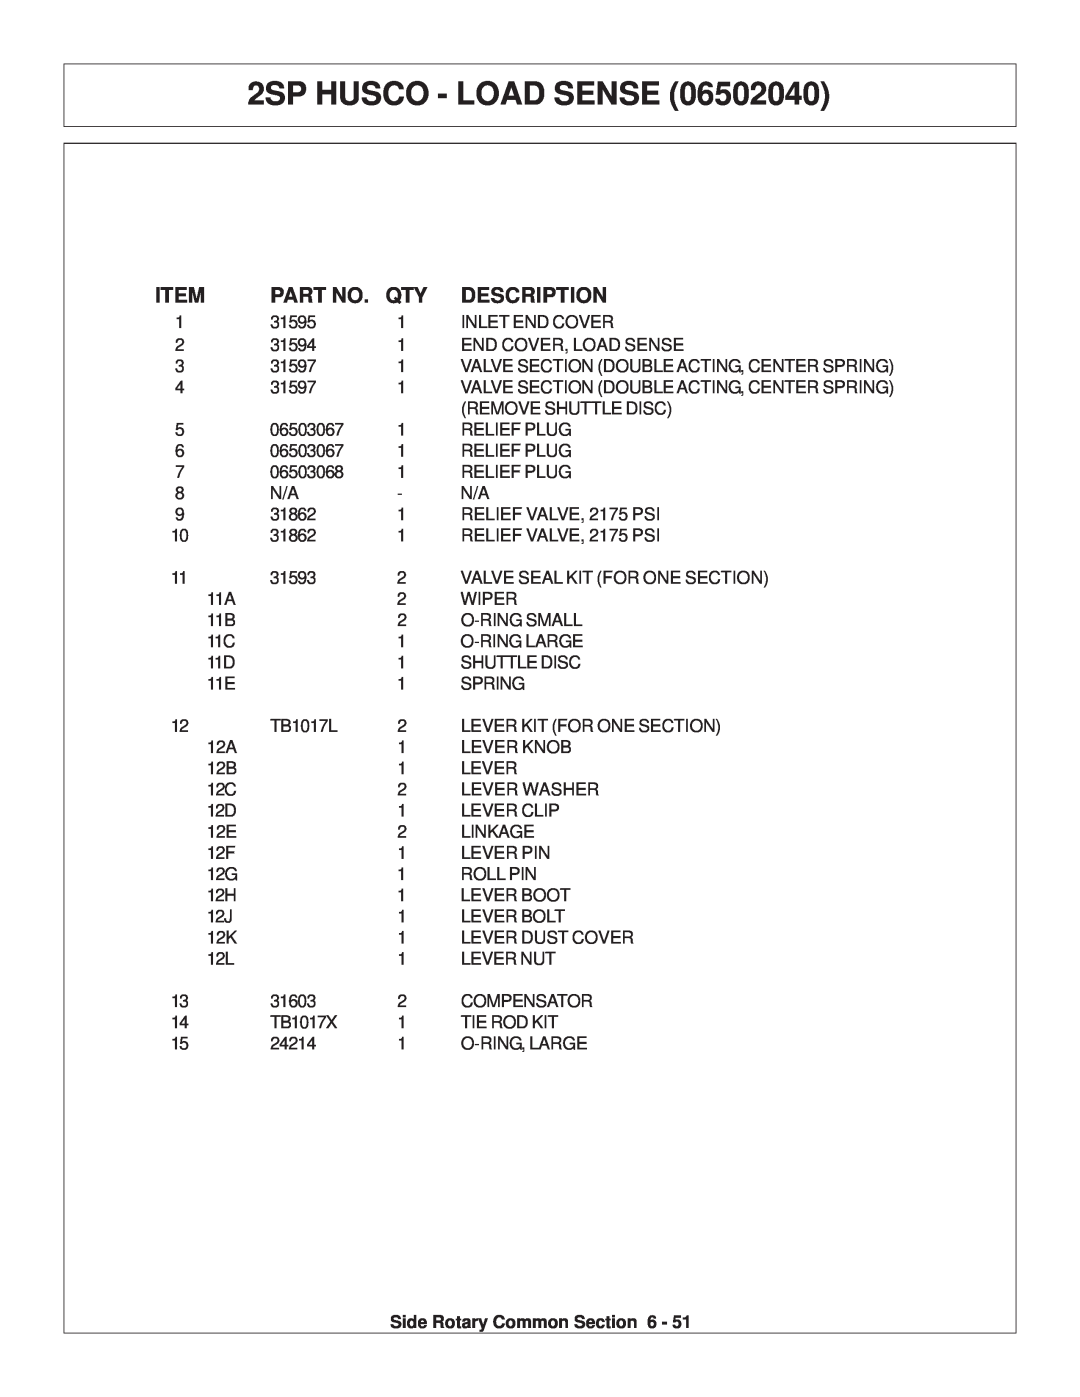 Tiger Products Co., Ltd TS 100A manual 2SP HUSCO - LOAD SENSE, Description 